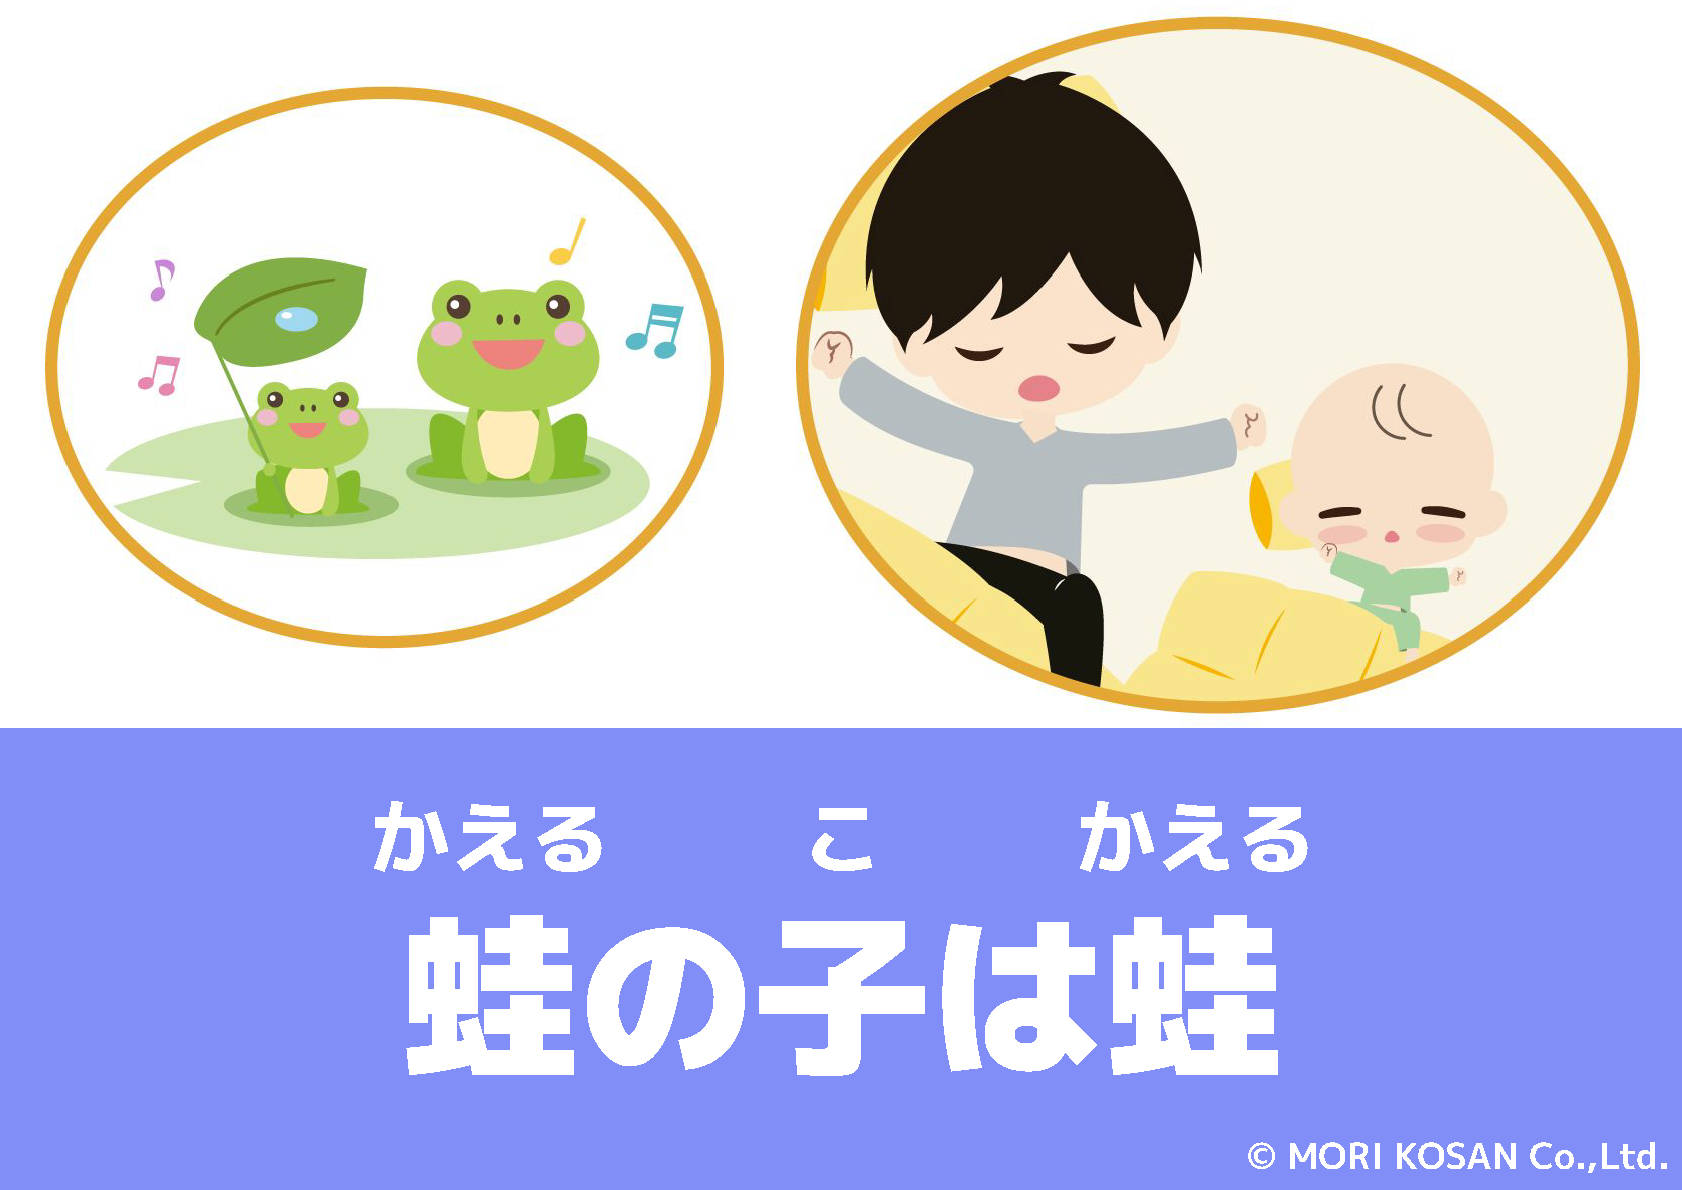 【WA.188】今日の日本語「蛙の子は蛙」